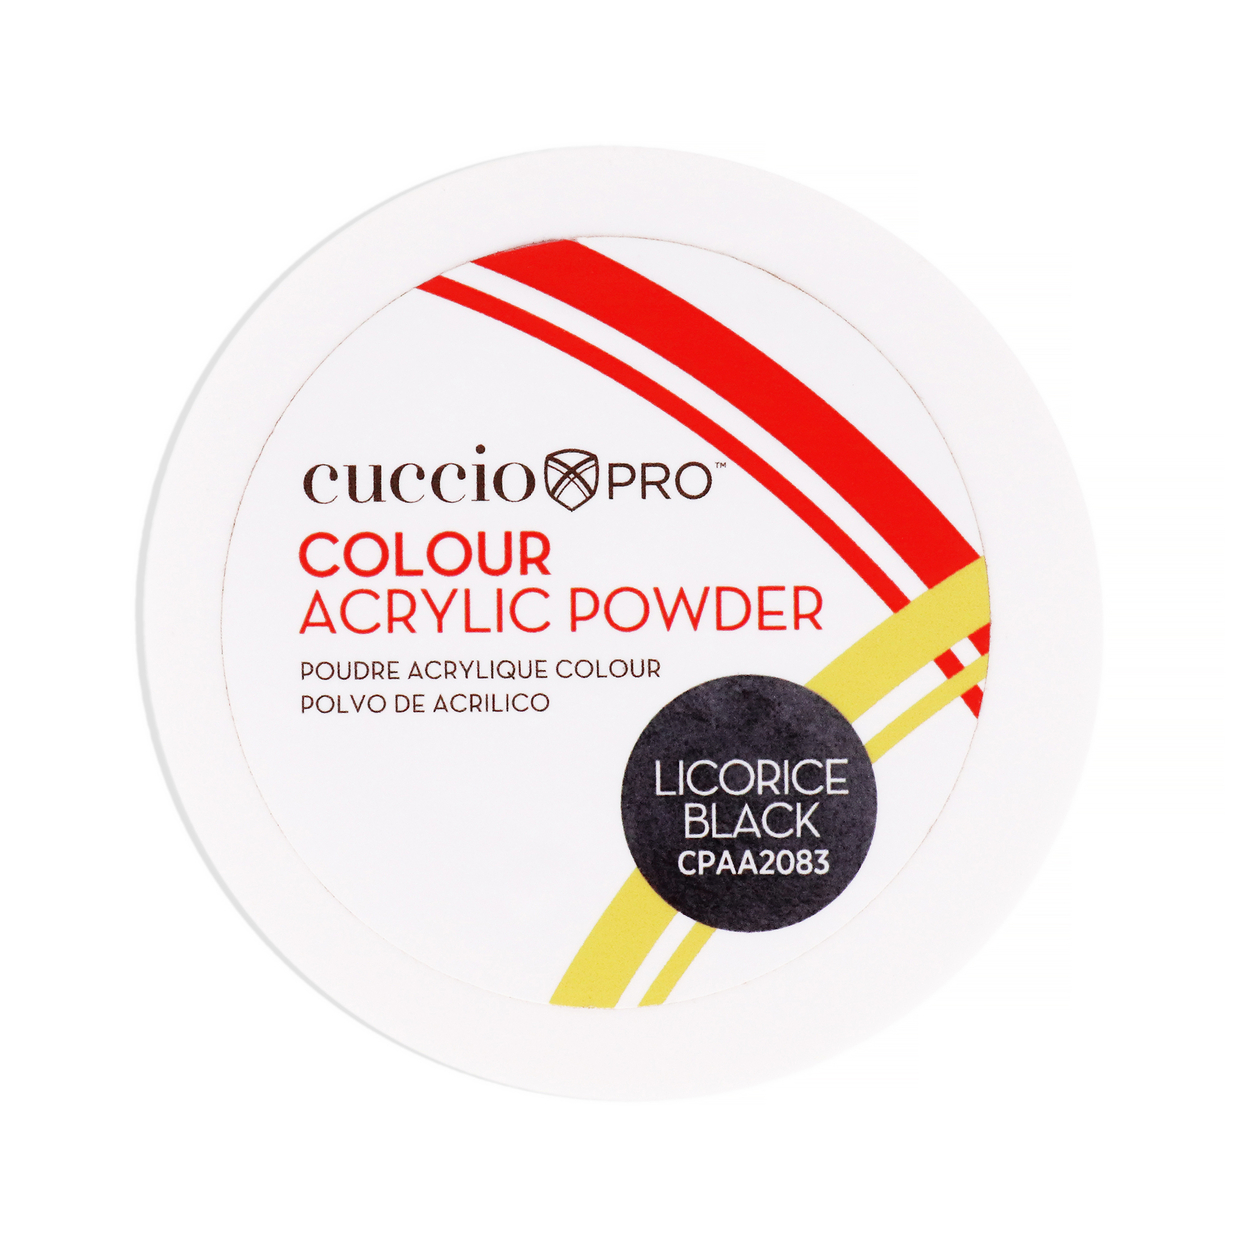 Cuccio PRO Colour Acrylic Powder - Licorice Black 1.6 Oz